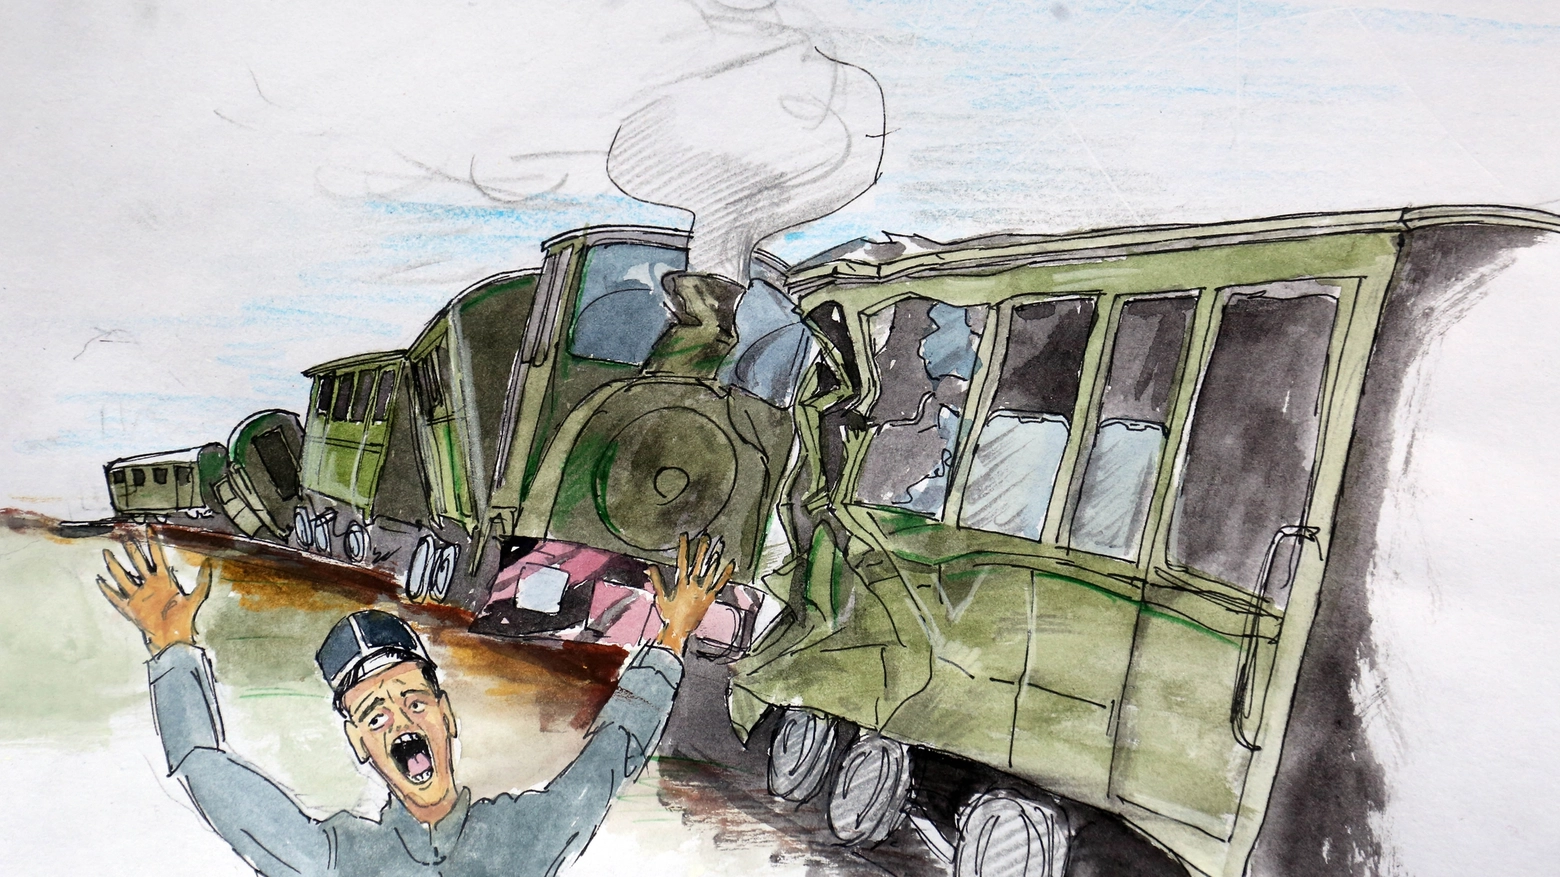 L'incidente al tram nell'illustrazione di Guido Bandera